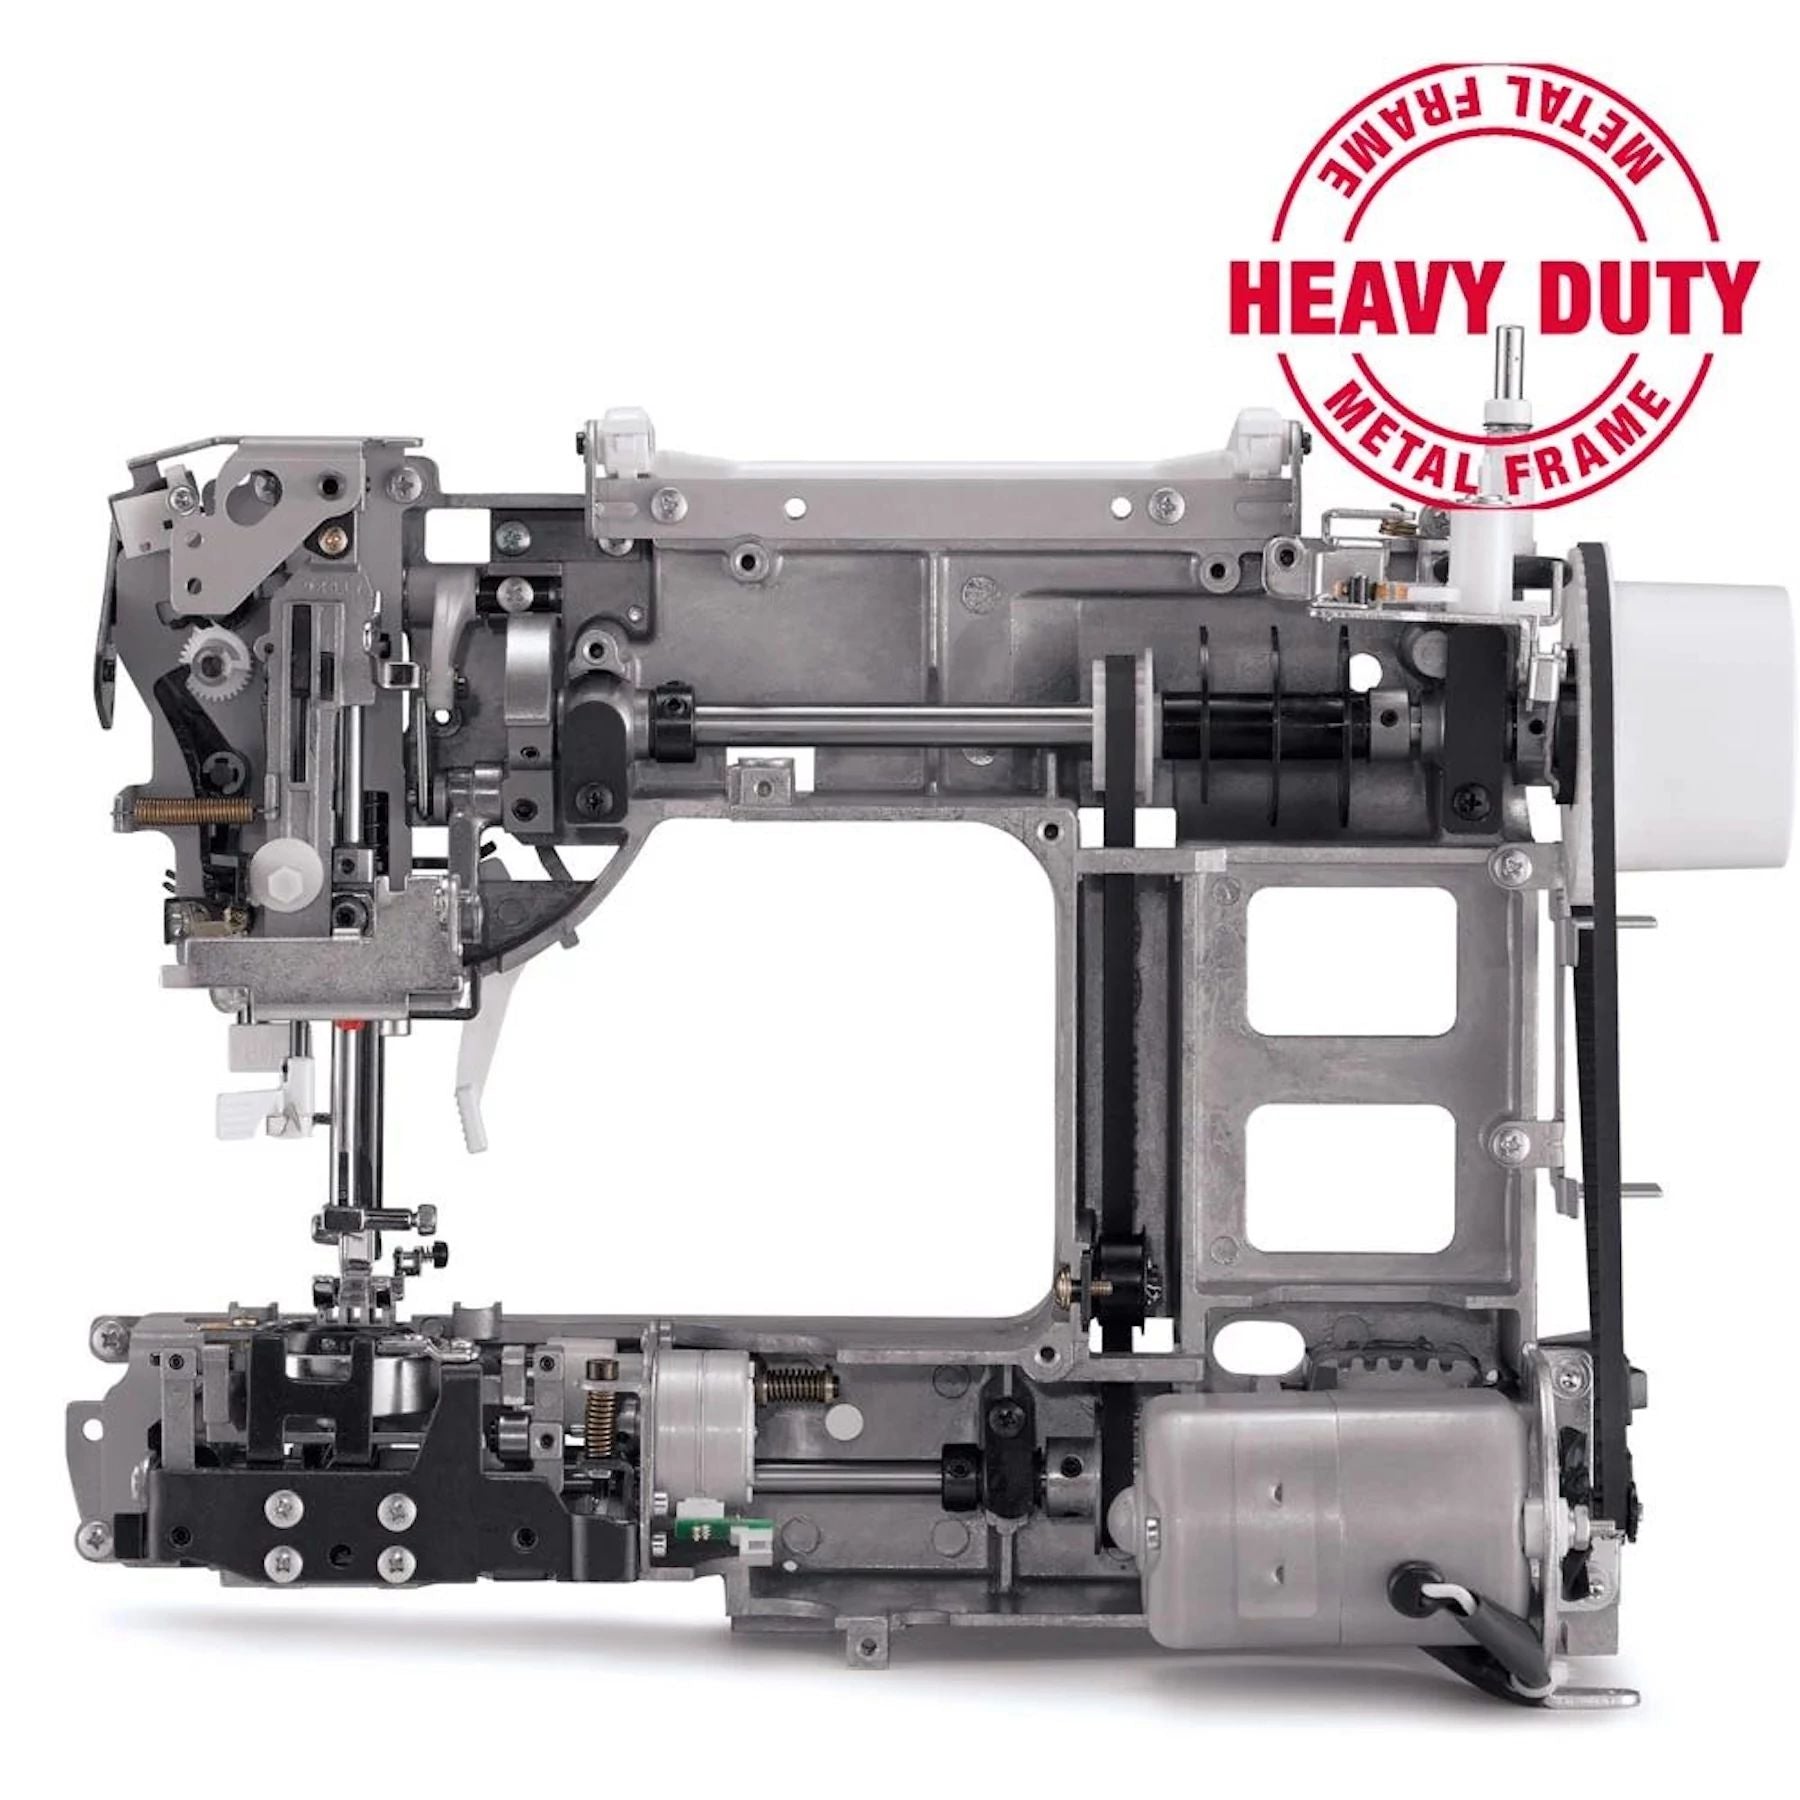 Kraftig metallramme som er inne i Singer Heavy Duty-maskiner.